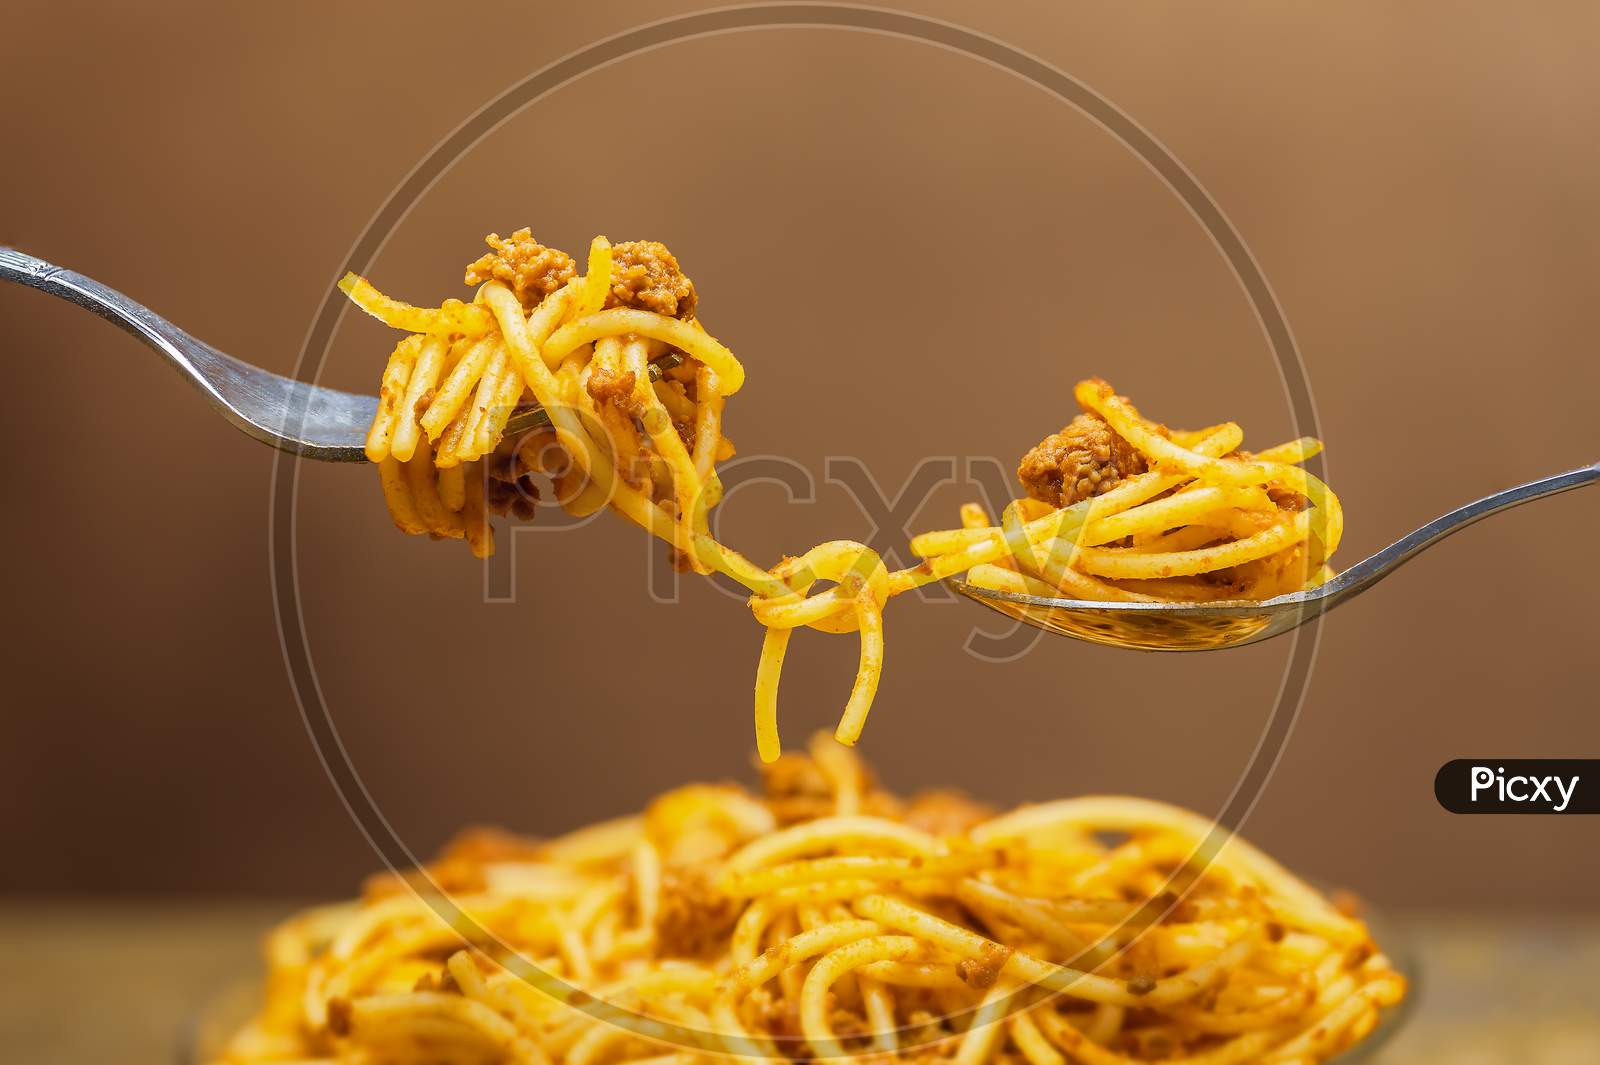 Tasty noodles